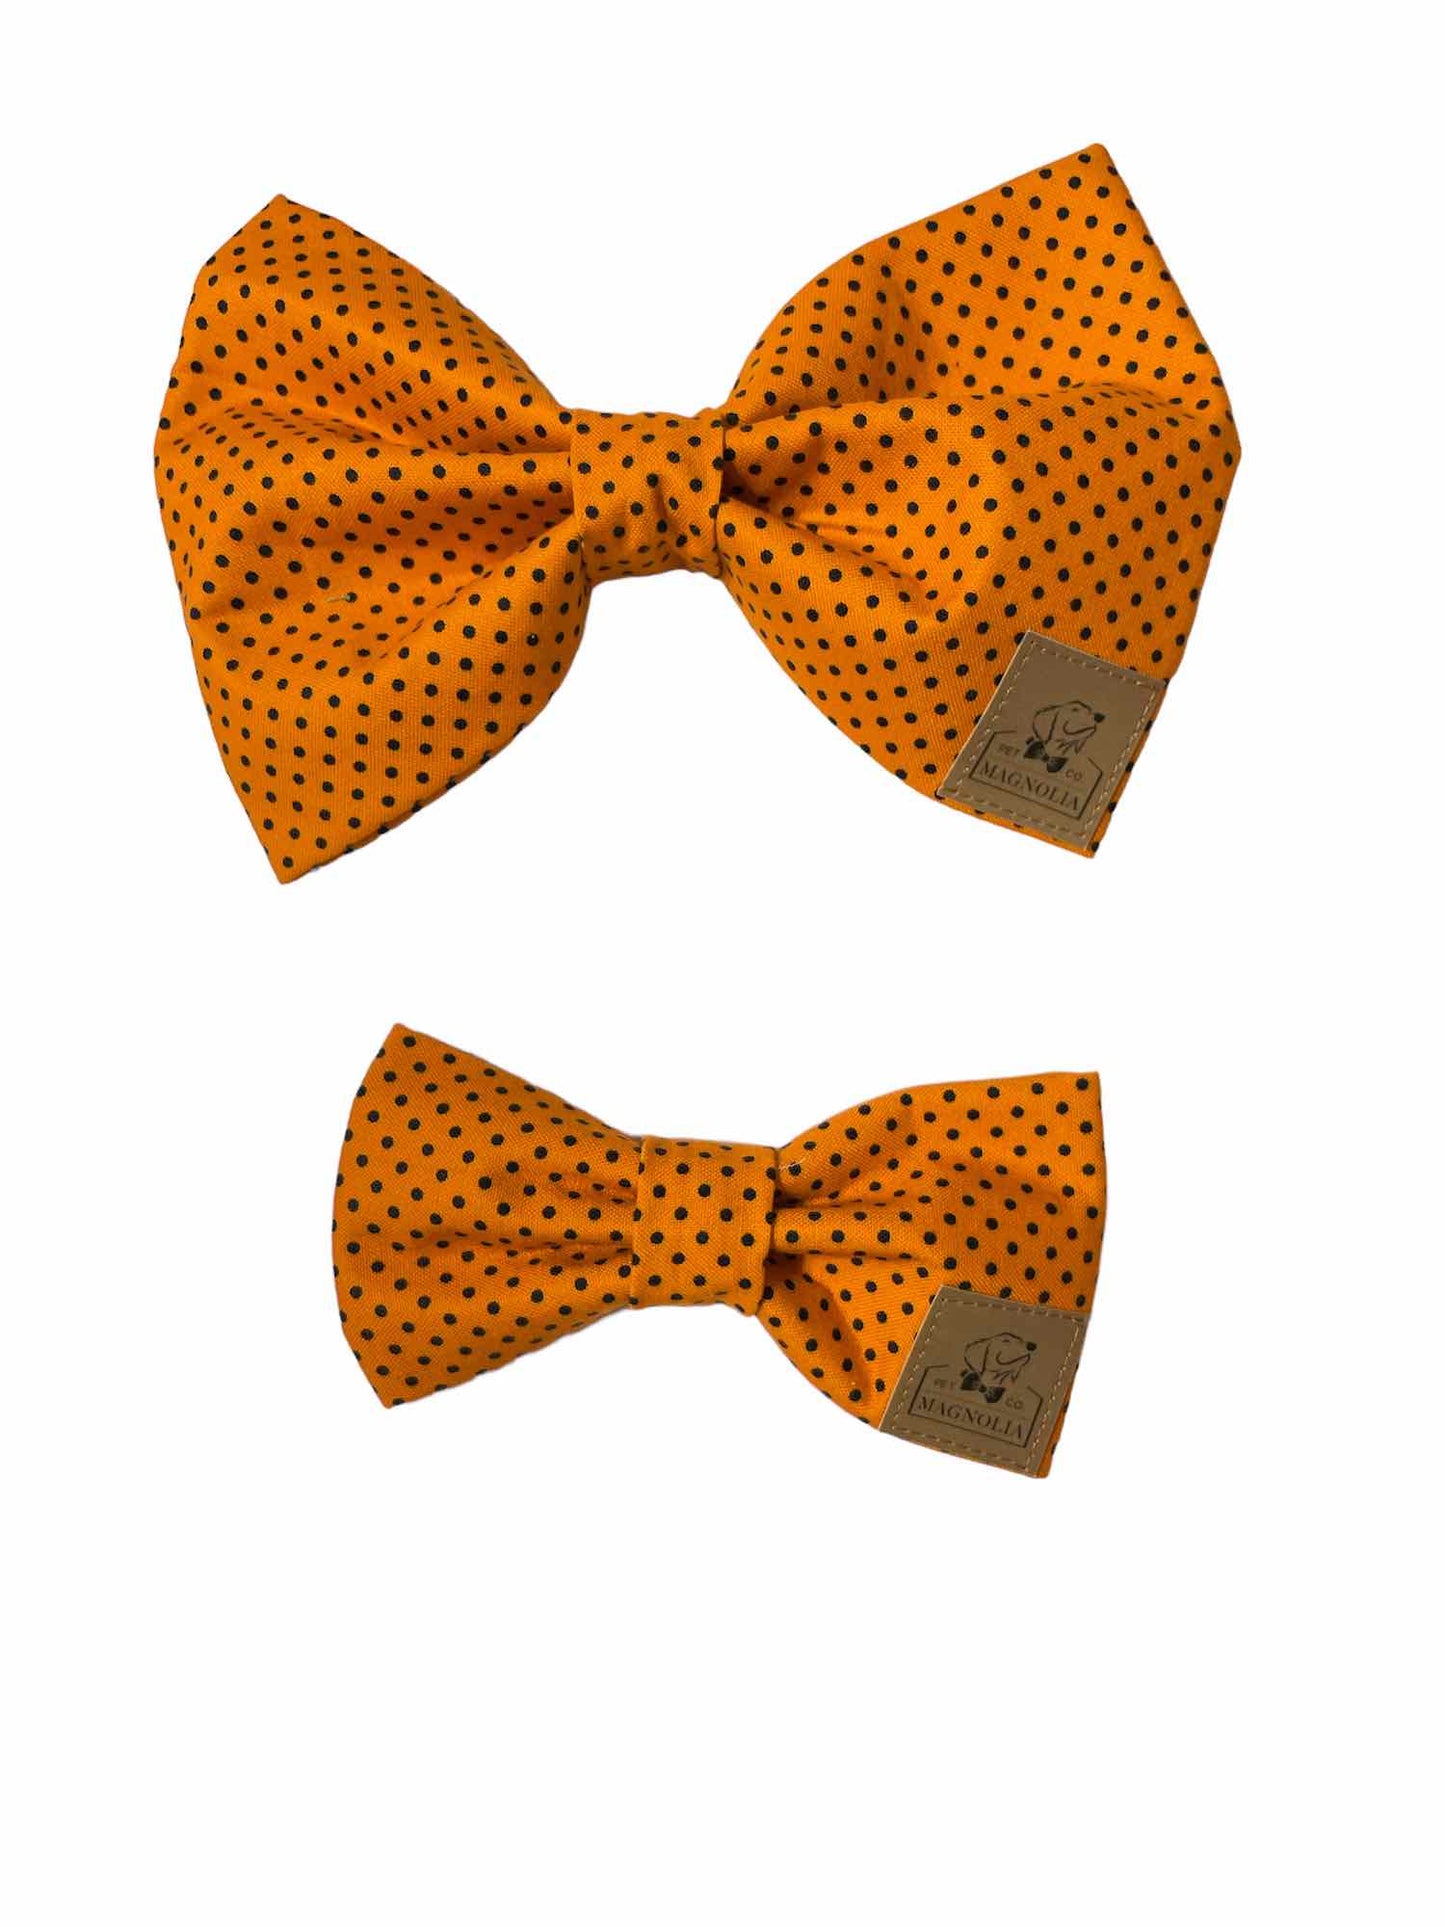 Orange with Black Polkadot Bow Tie